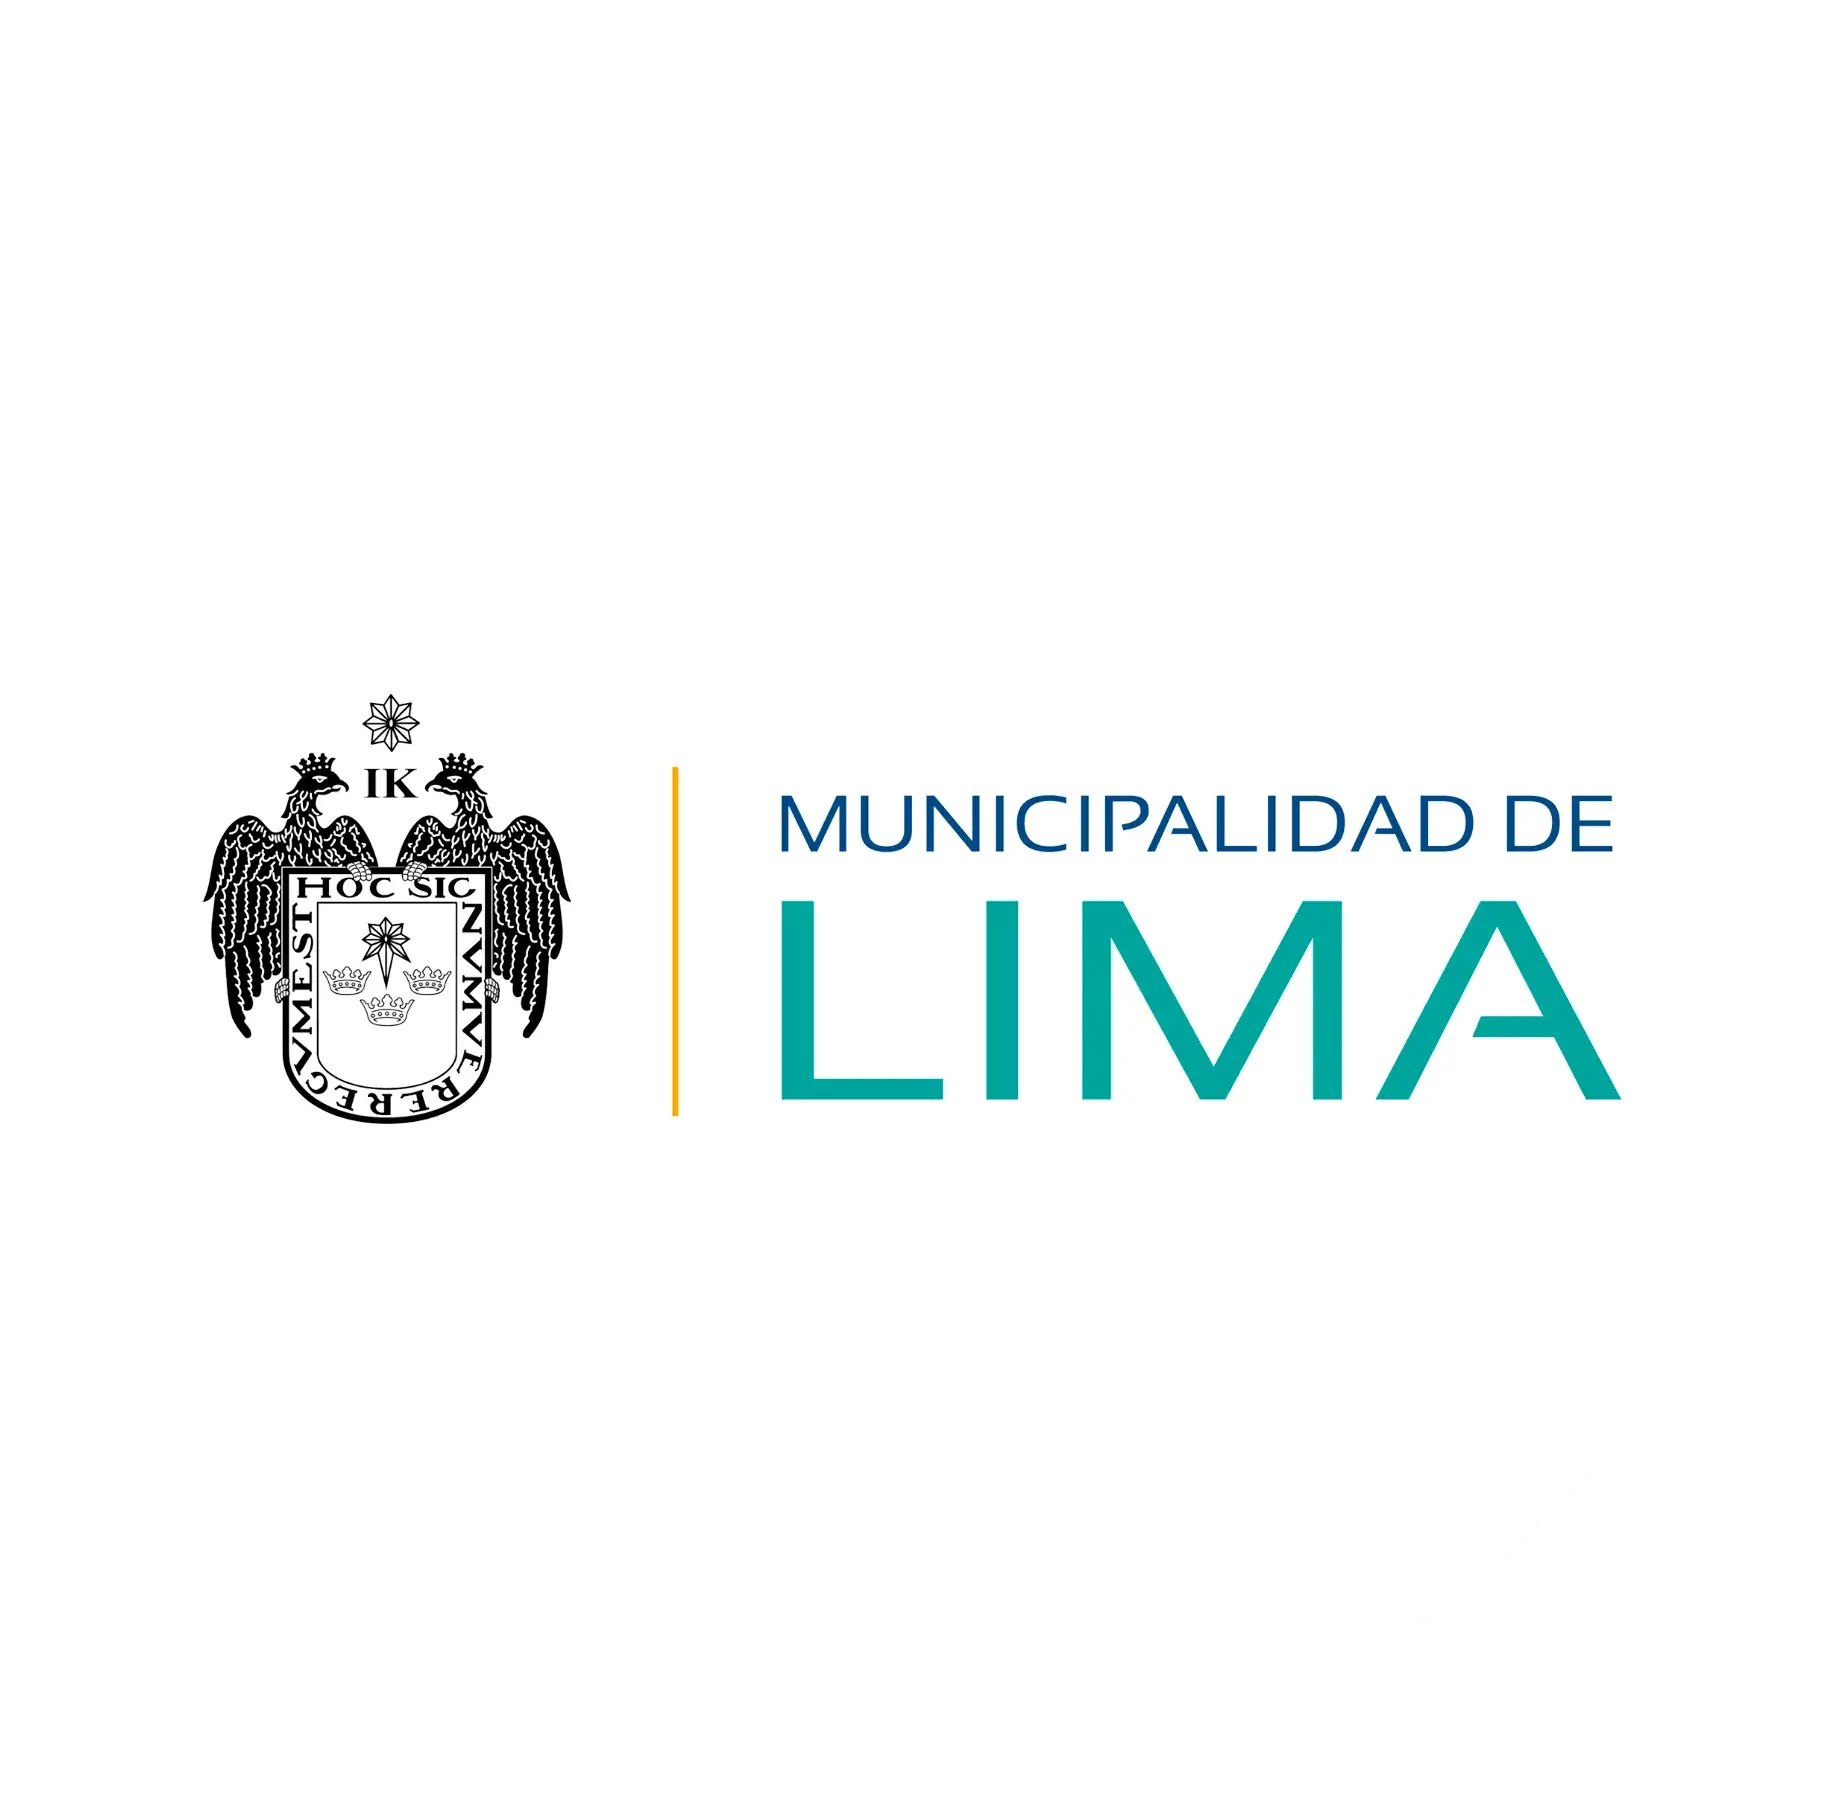 5. Municipalidad Lima